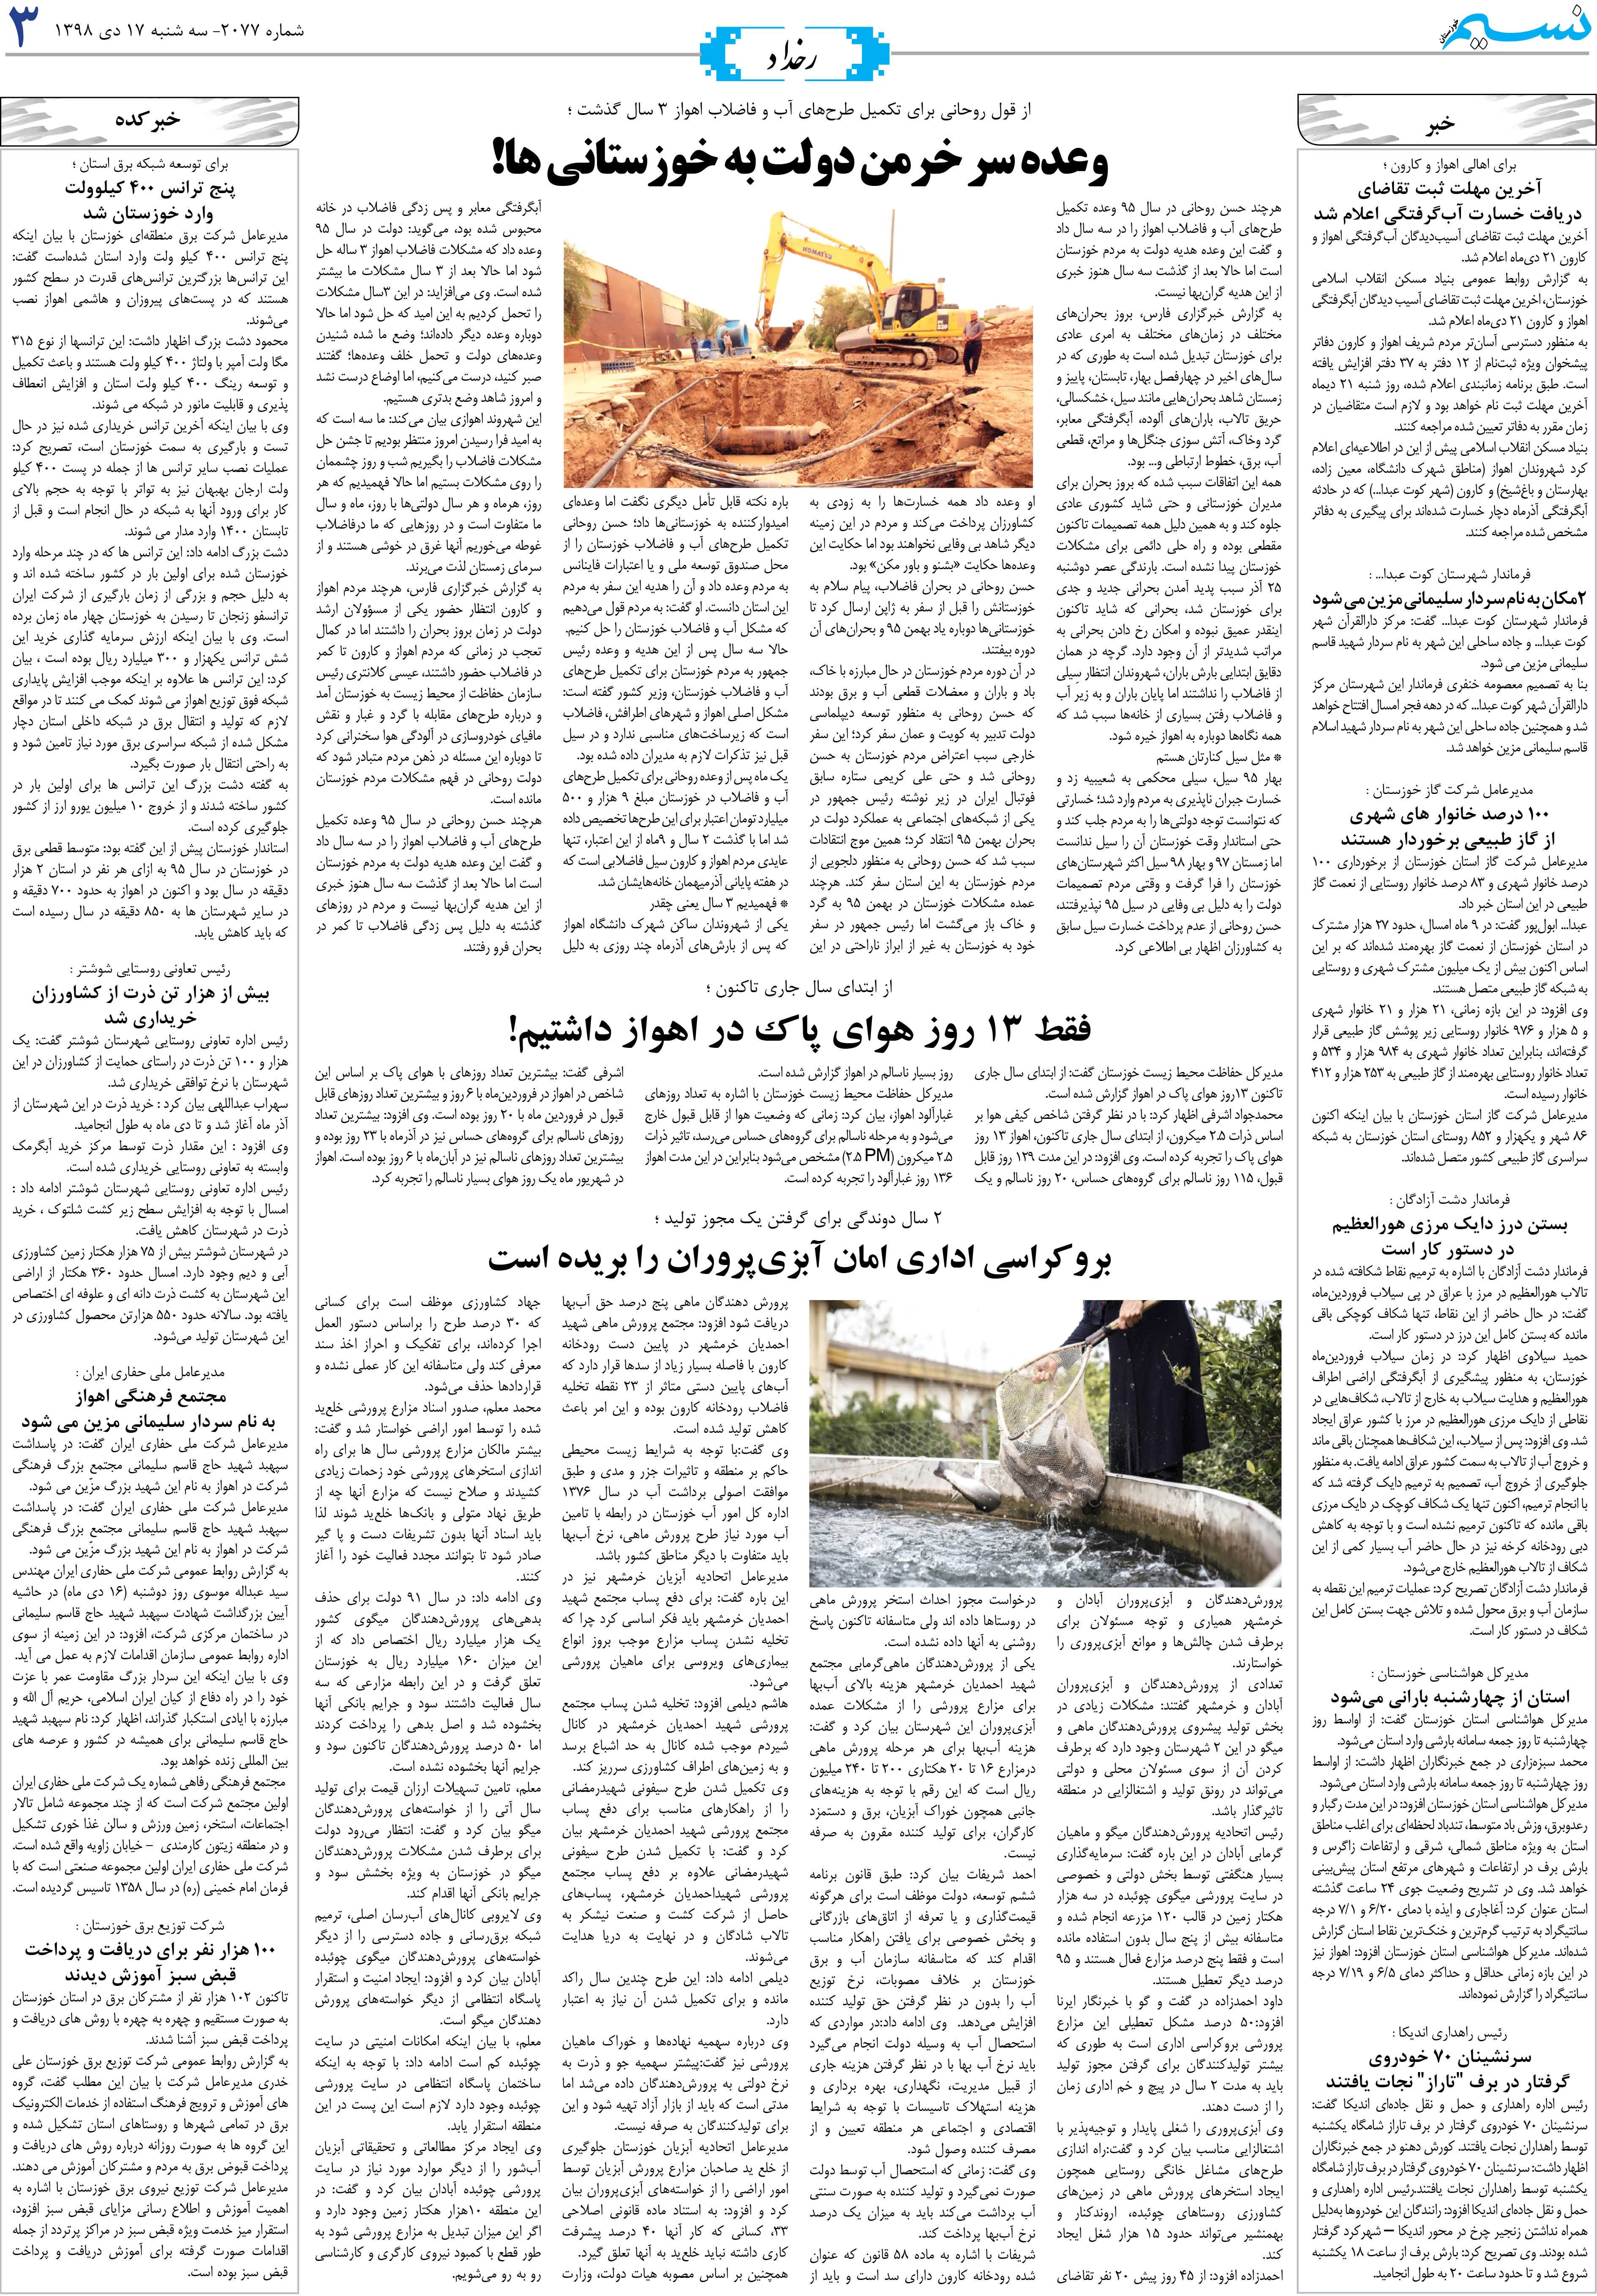 صفحه رخداد روزنامه نسیم شماره 2077